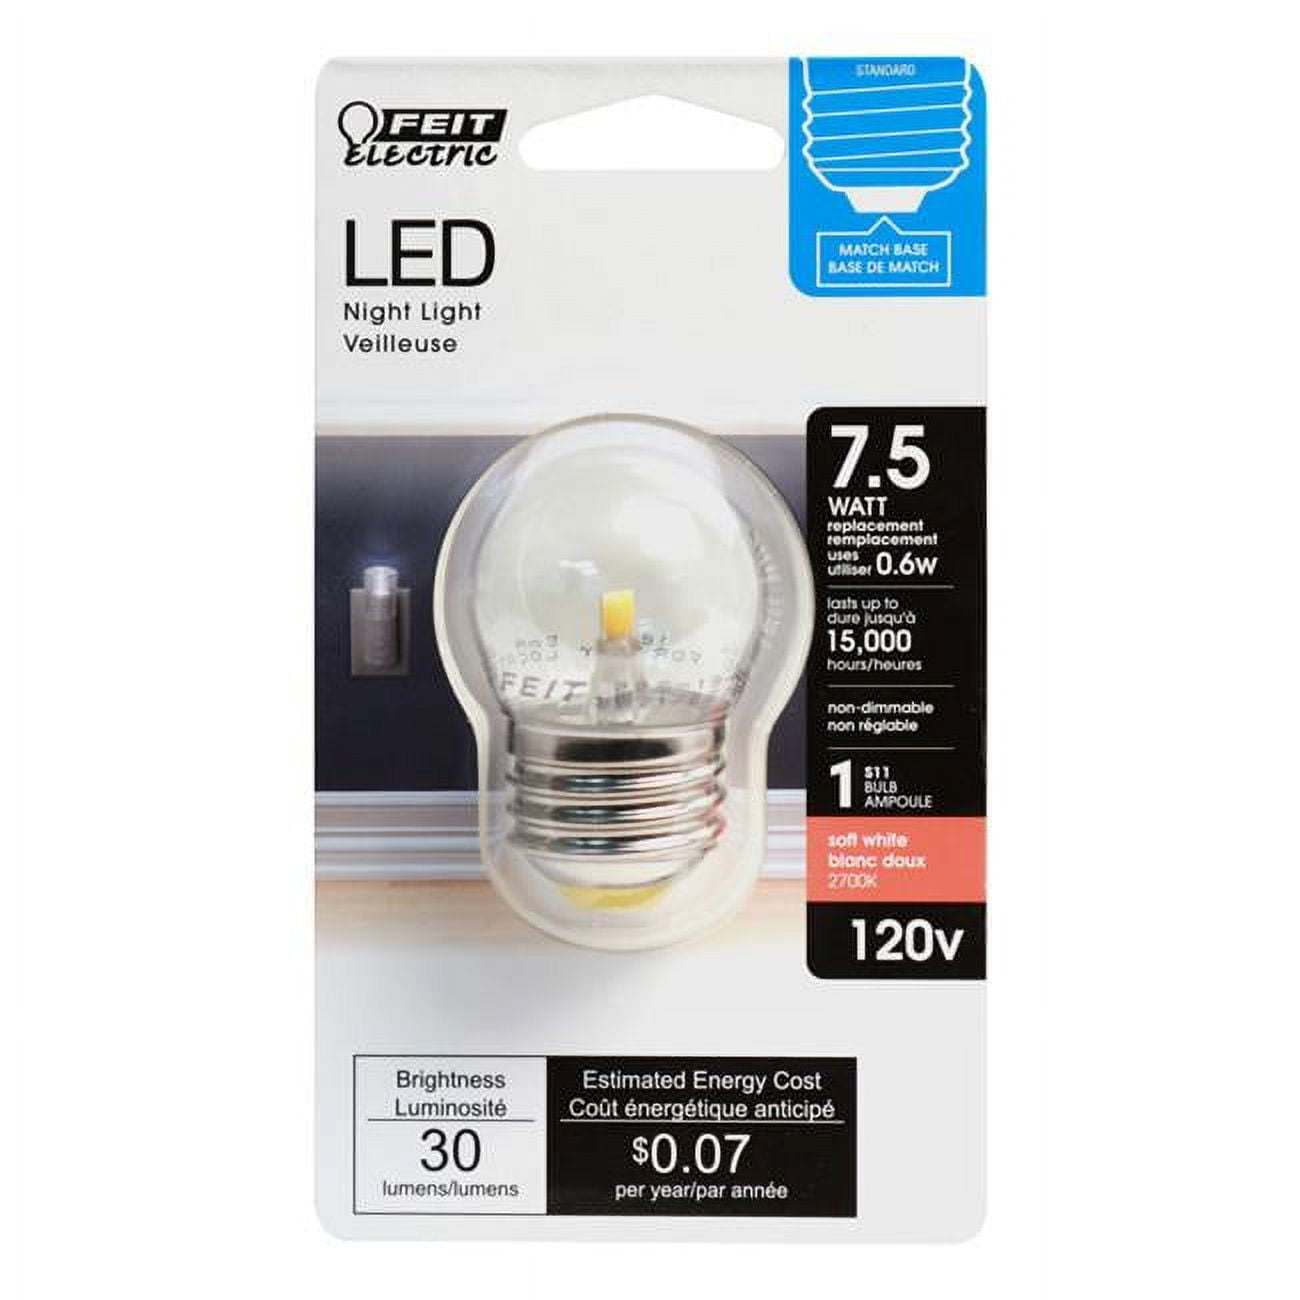 3935194 7.5 Watt Equivalence 0.6 Watt 30 Lumen S11 Nightlight Led Bulb, Soft White